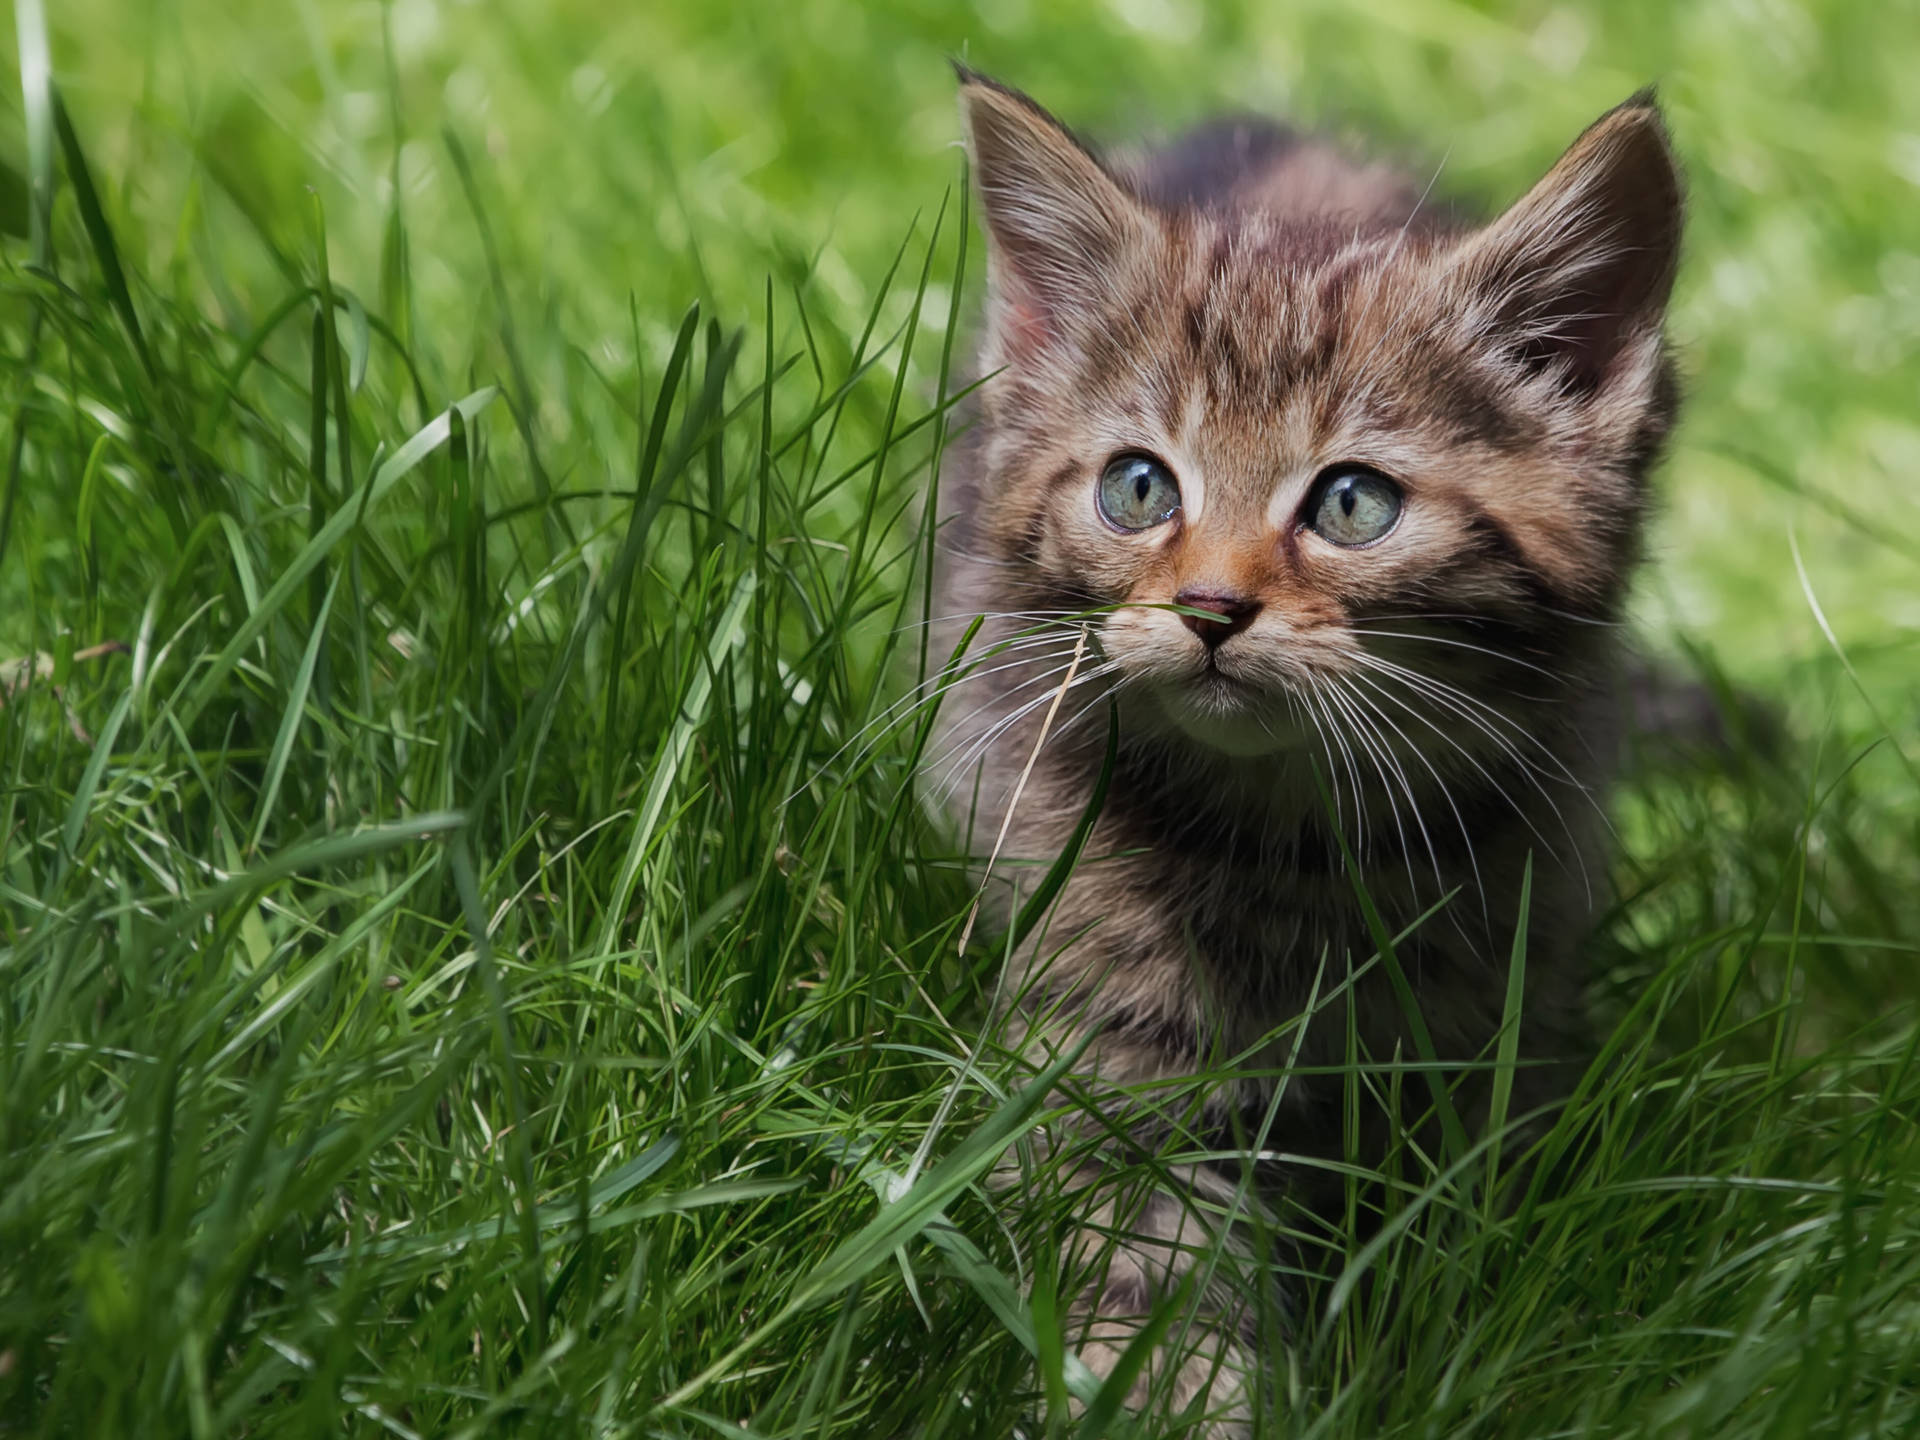 Cute Kitten Walking On Grass